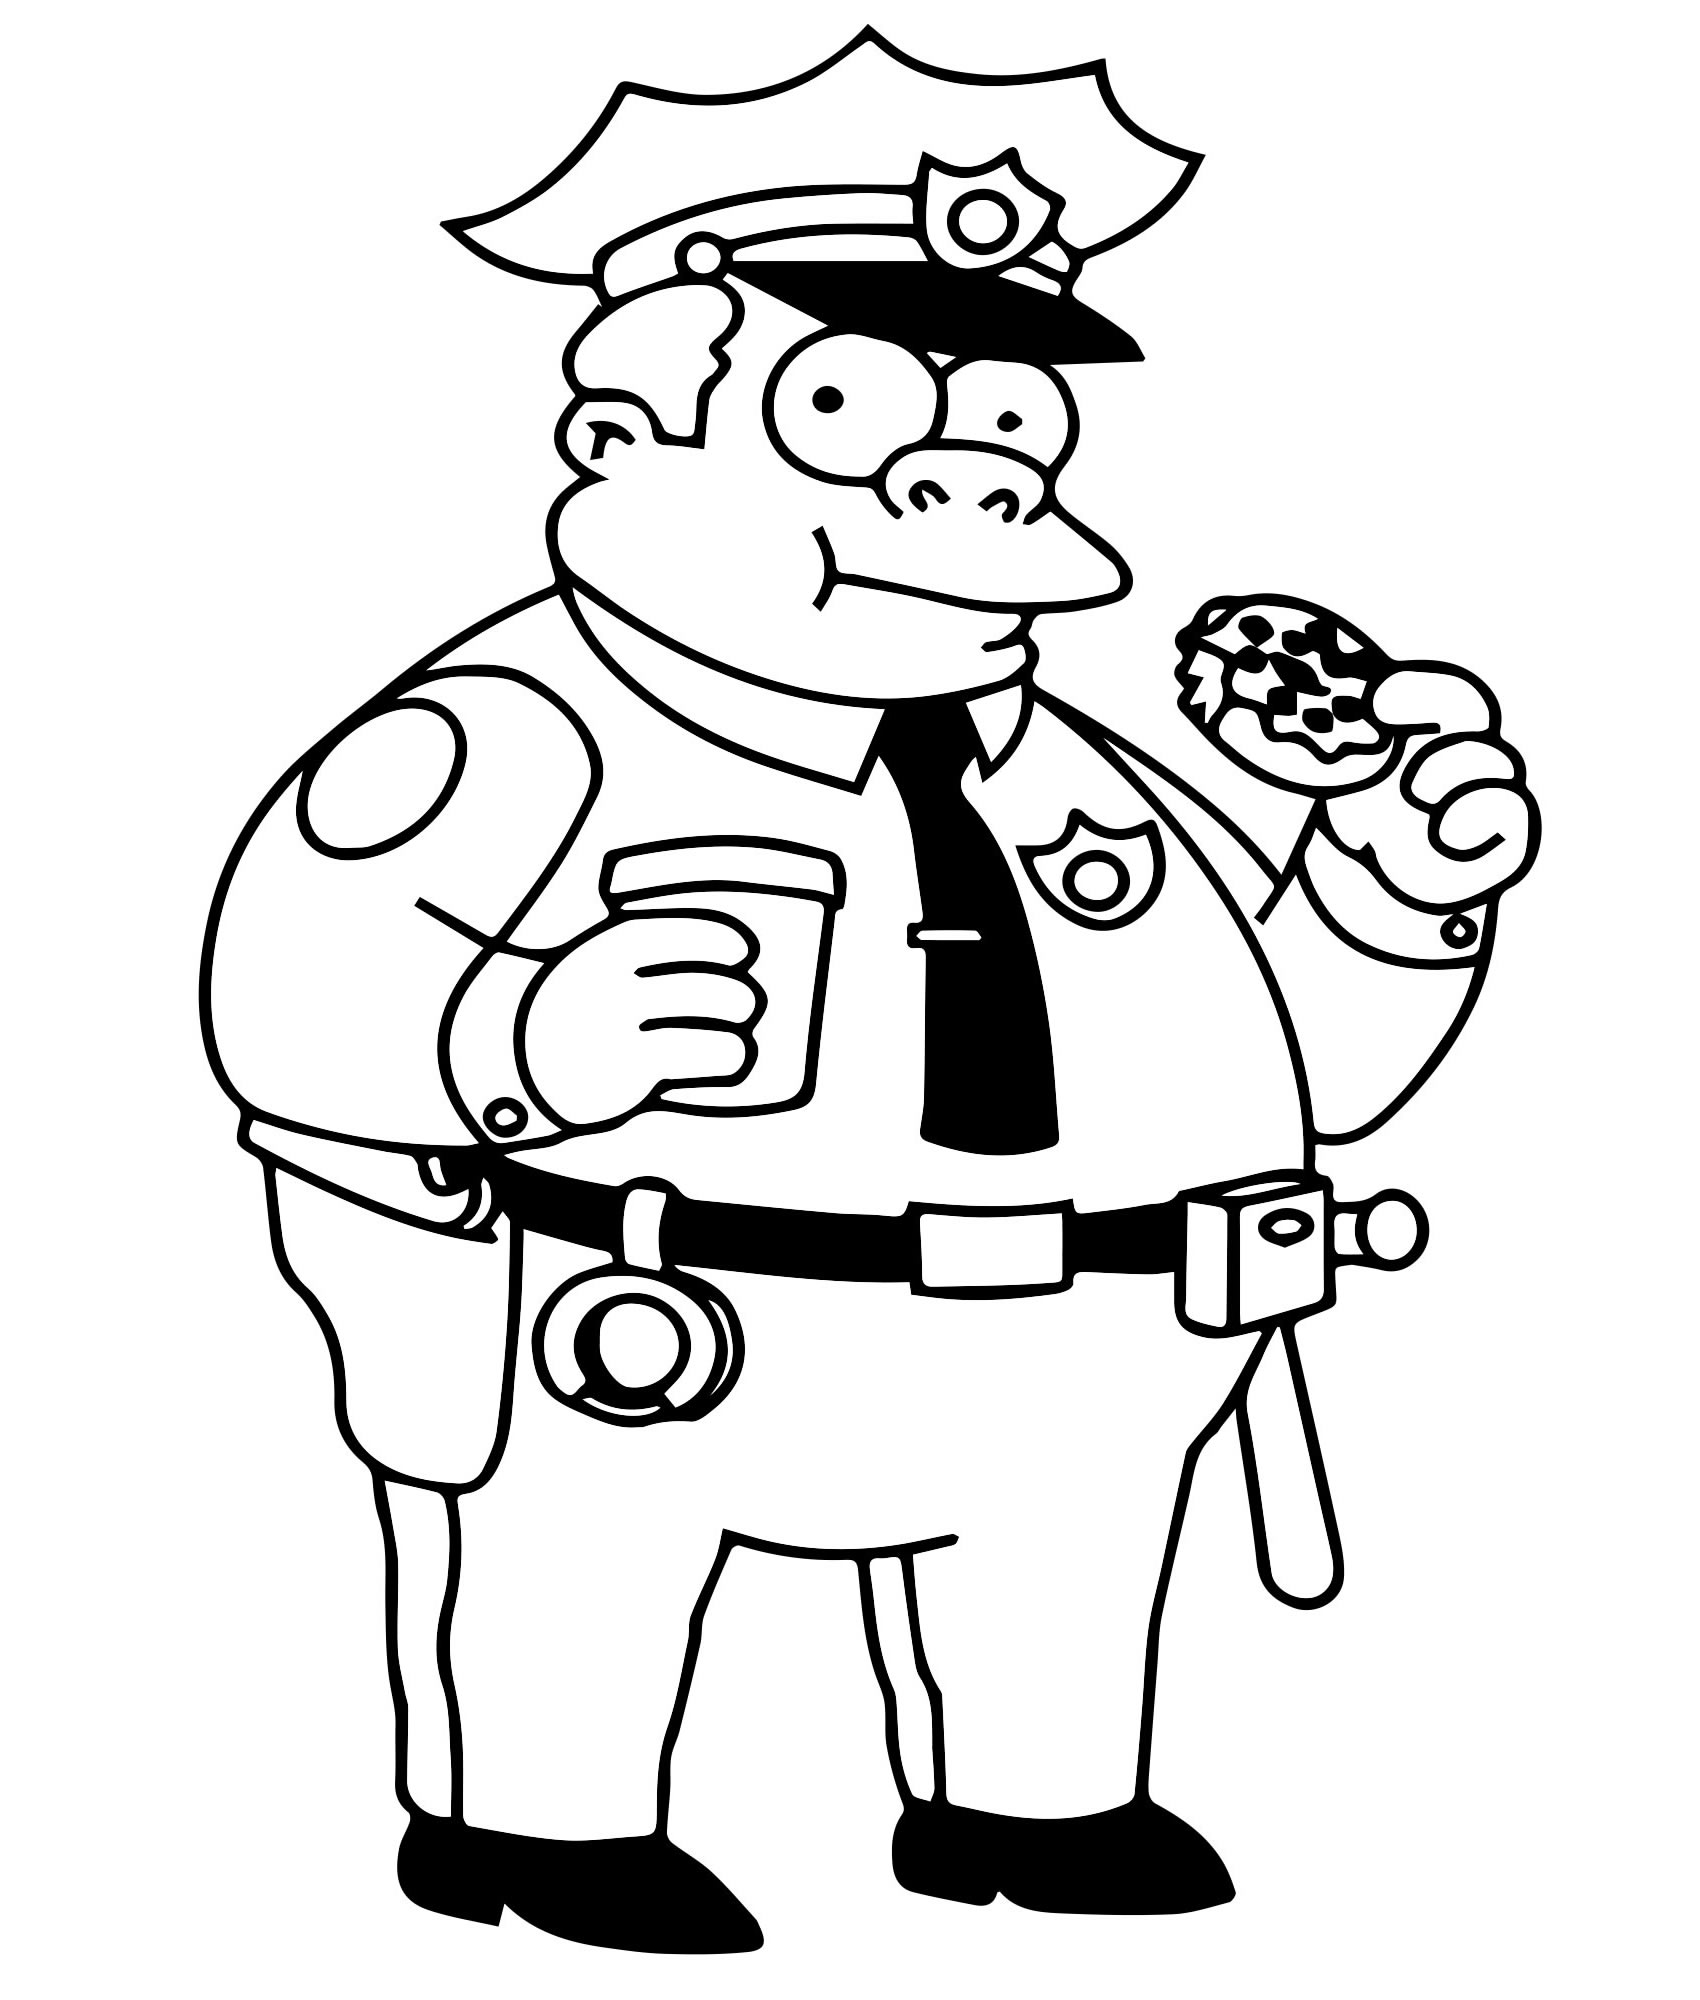 Полицейский из Симпсонов раскраска для детей